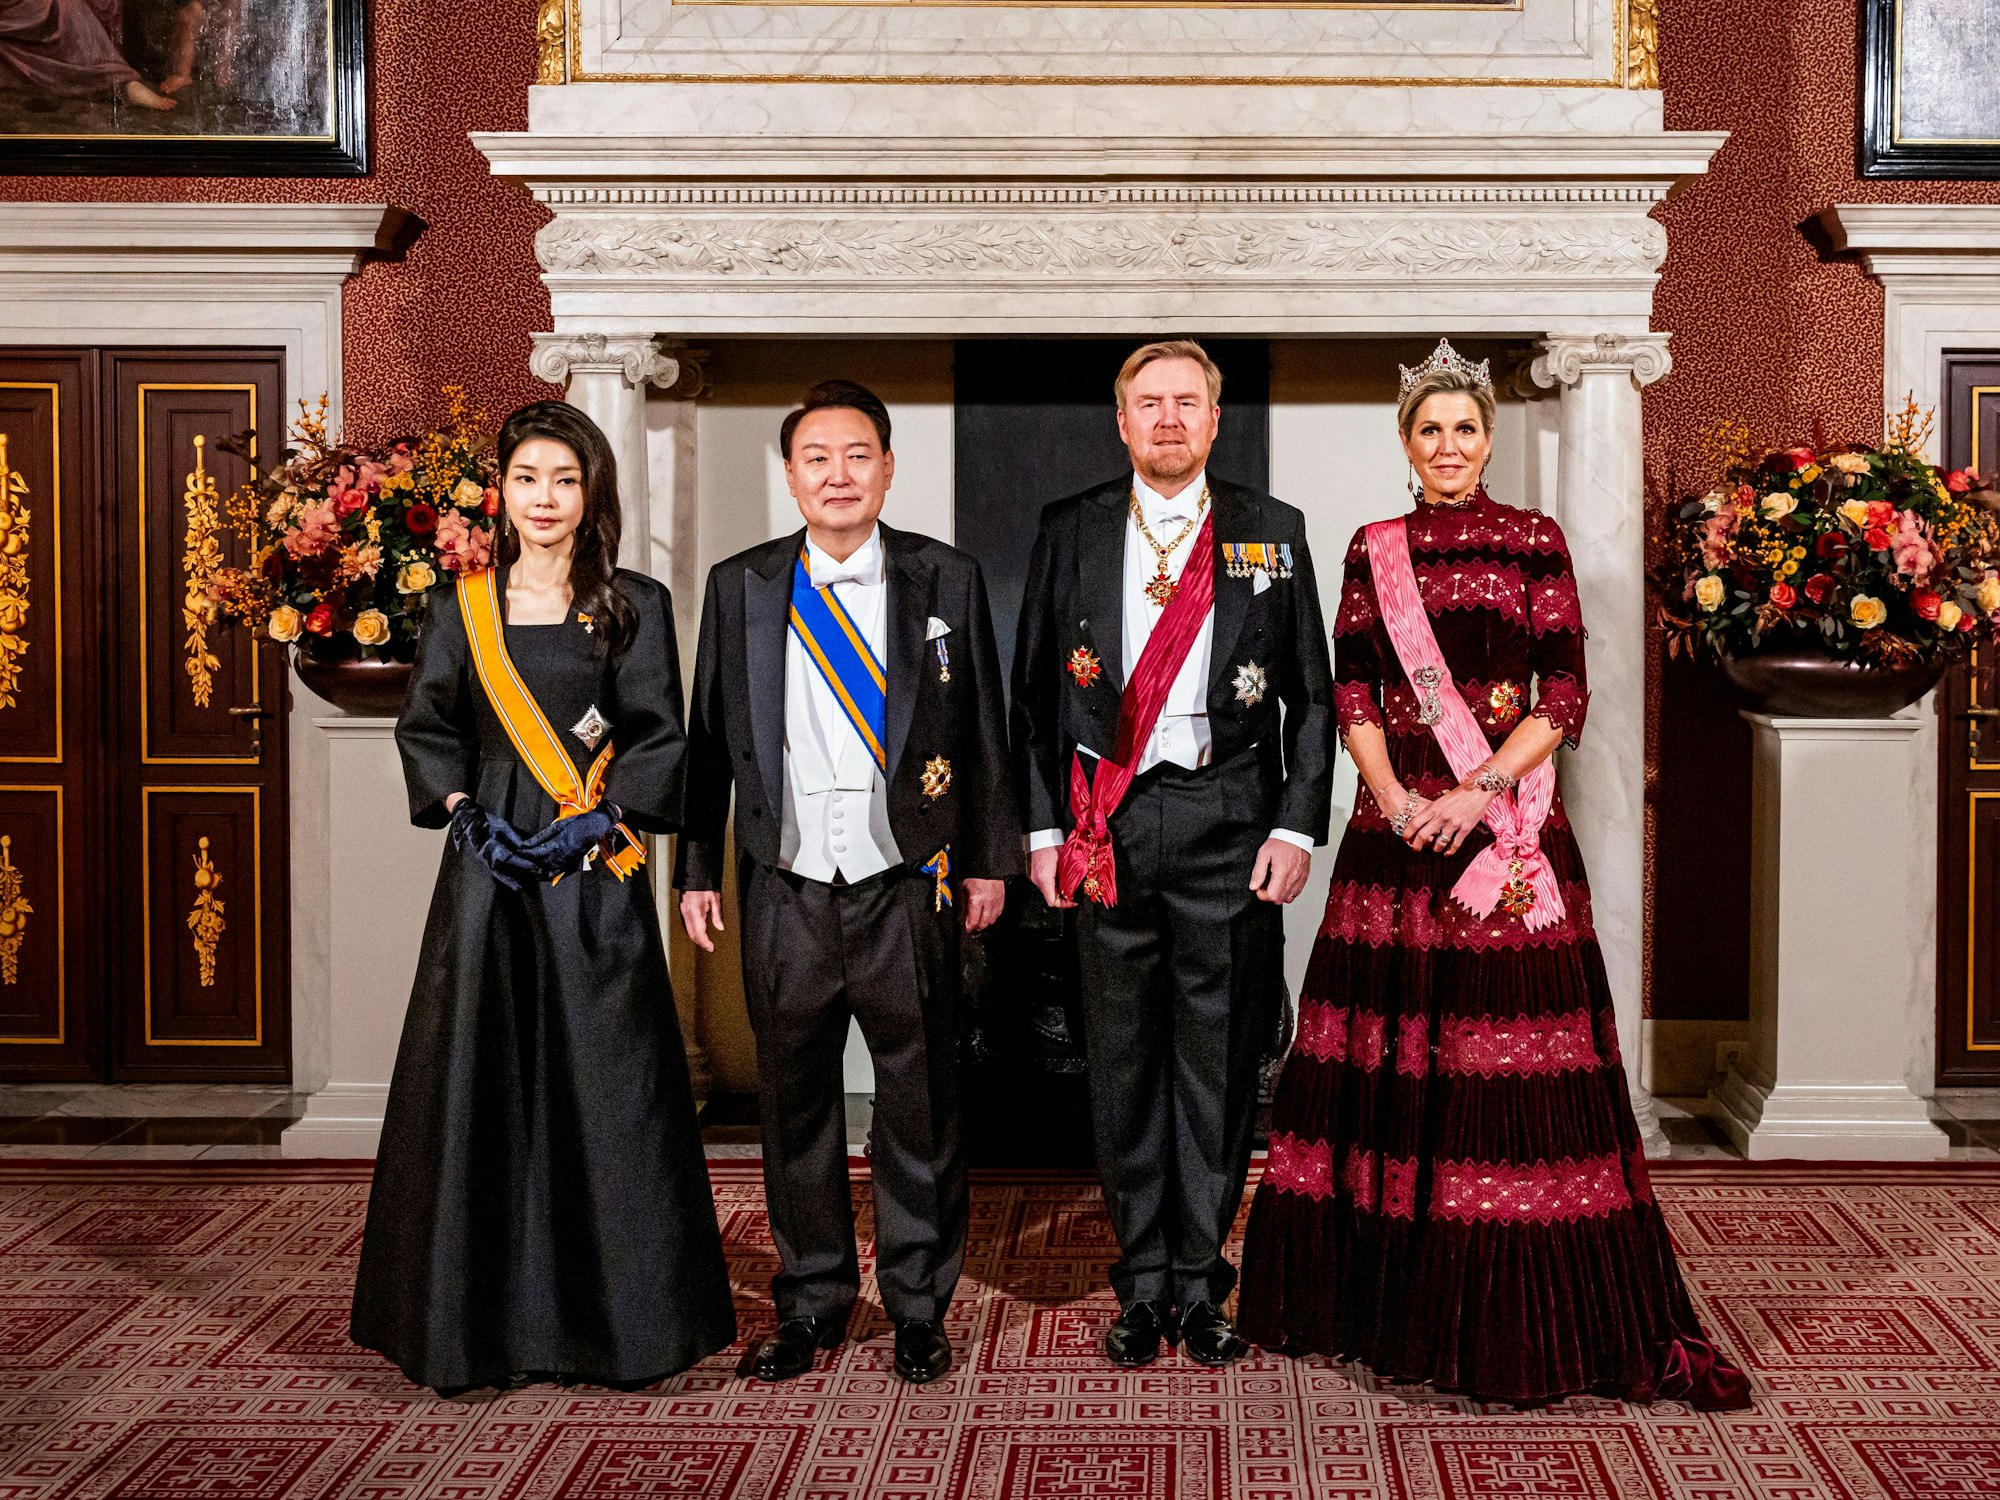 Südkoreas First Lady Kim Keon Hee, Präsident Yoon Suk Yeol der Republik Korea, König Willem-Alexander und Königin Maxima vor dem Staatsbankett im Königlichen Palast in Amsterdam.